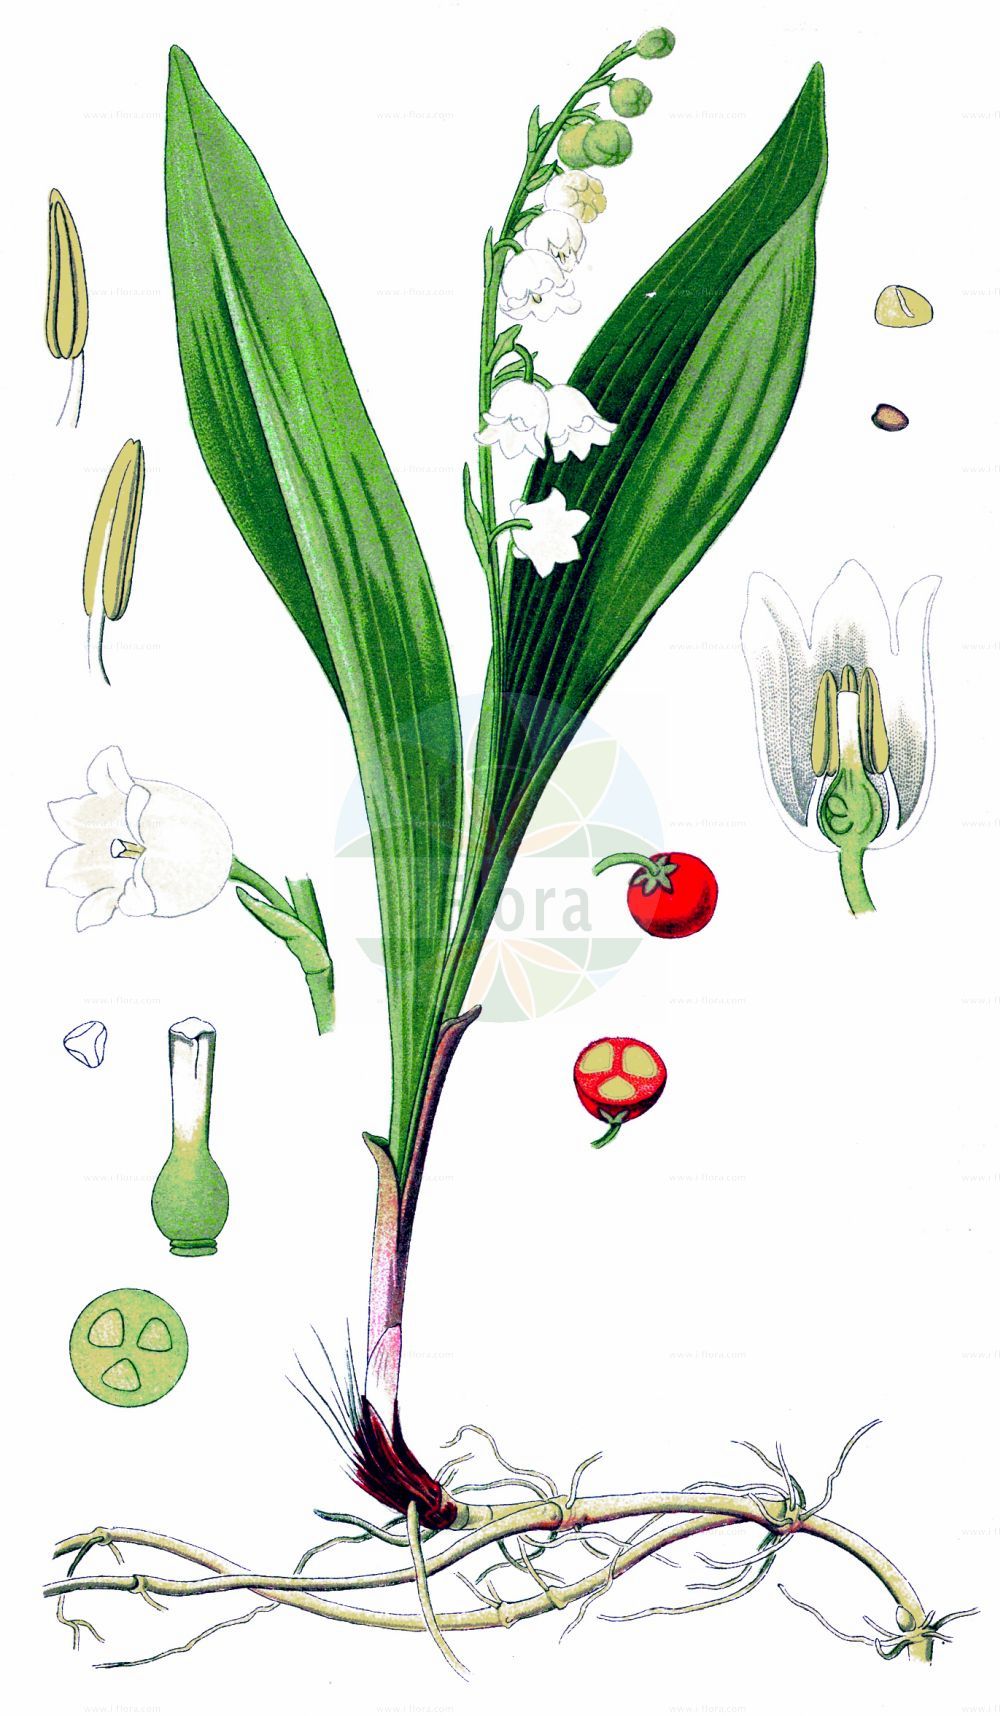 Historische Abbildung von Convallaria majalis (Maiglöckchen - Lily-of-The-Valley). Das Bild zeigt Blatt, Bluete, Frucht und Same. ---- Historical Drawing of Convallaria majalis (Maiglöckchen - Lily-of-The-Valley). The image is showing leaf, flower, fruit and seed.(Convallaria majalis,Maiglöckchen,Lily-of-The-Valley,Convallaria bracteata,Convallaria fragrans,Convallaria latifolia,Convallaria linnaei,Convallaria majalis,Convallaria mappii,Convallaria scaposa,Convallaria transcaucasica,Lilium convallium,Lilium-convallium majale,Polygonatum majale,Maigloeckchen,Maiblume,Lily-of-The-Valley,European Lily Of The Valley,May Lily,Convallaria,Maiglöckchen,Lily-of-The-Valley,Asparagaceae,Spargelgewächse,Asparagus family,Blatt,Bluete,Frucht,Same,leaf,flower,fruit,seed,Thomé (1885))